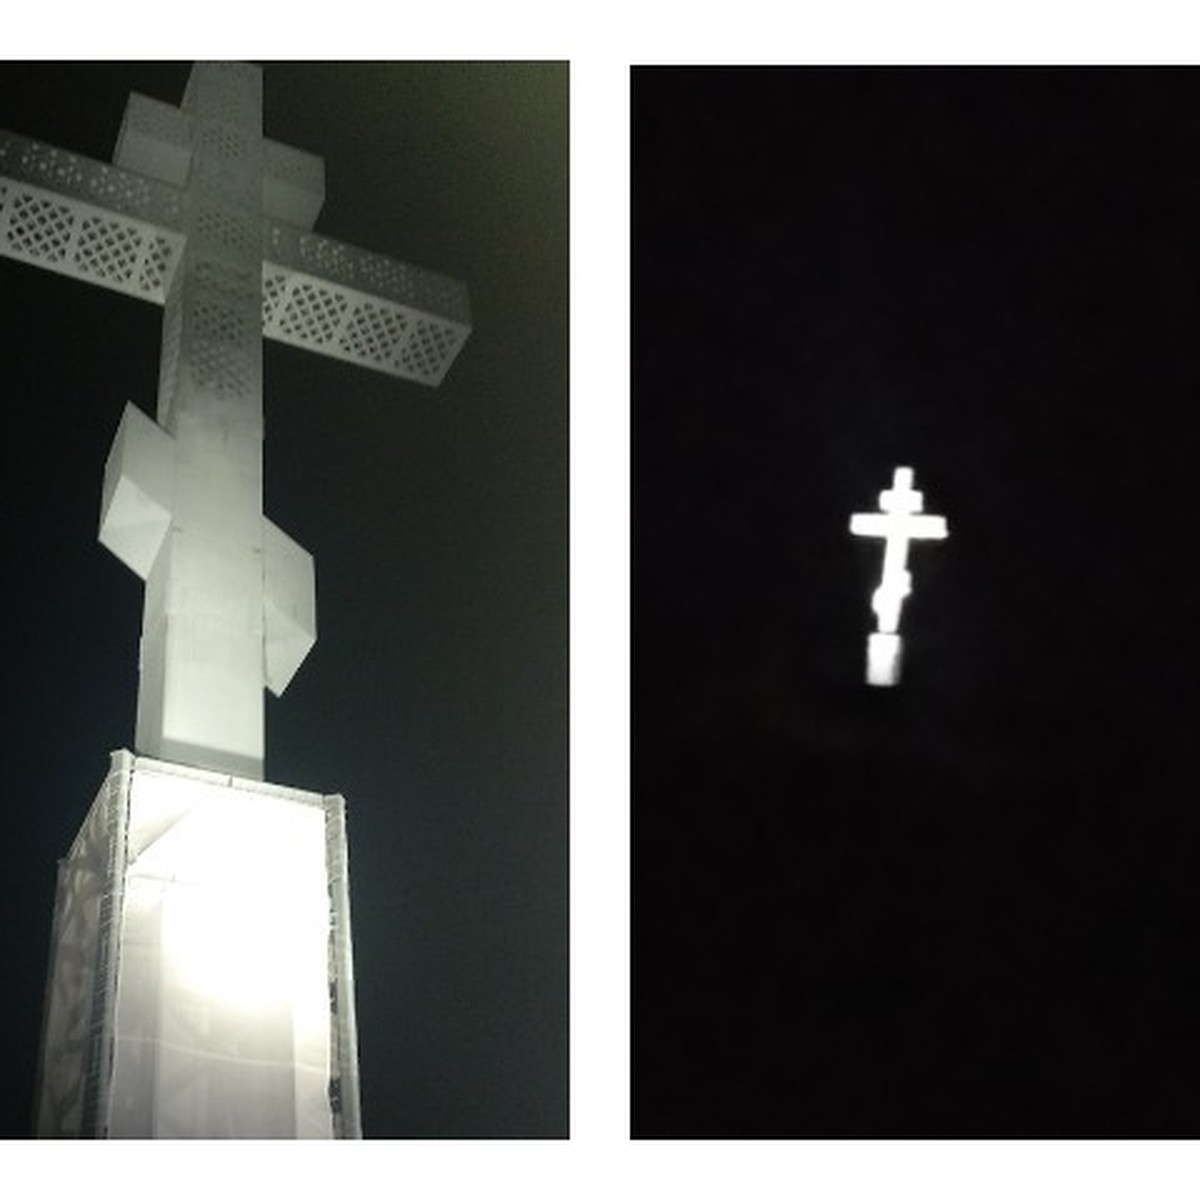 крест на въезде в красноярск фото